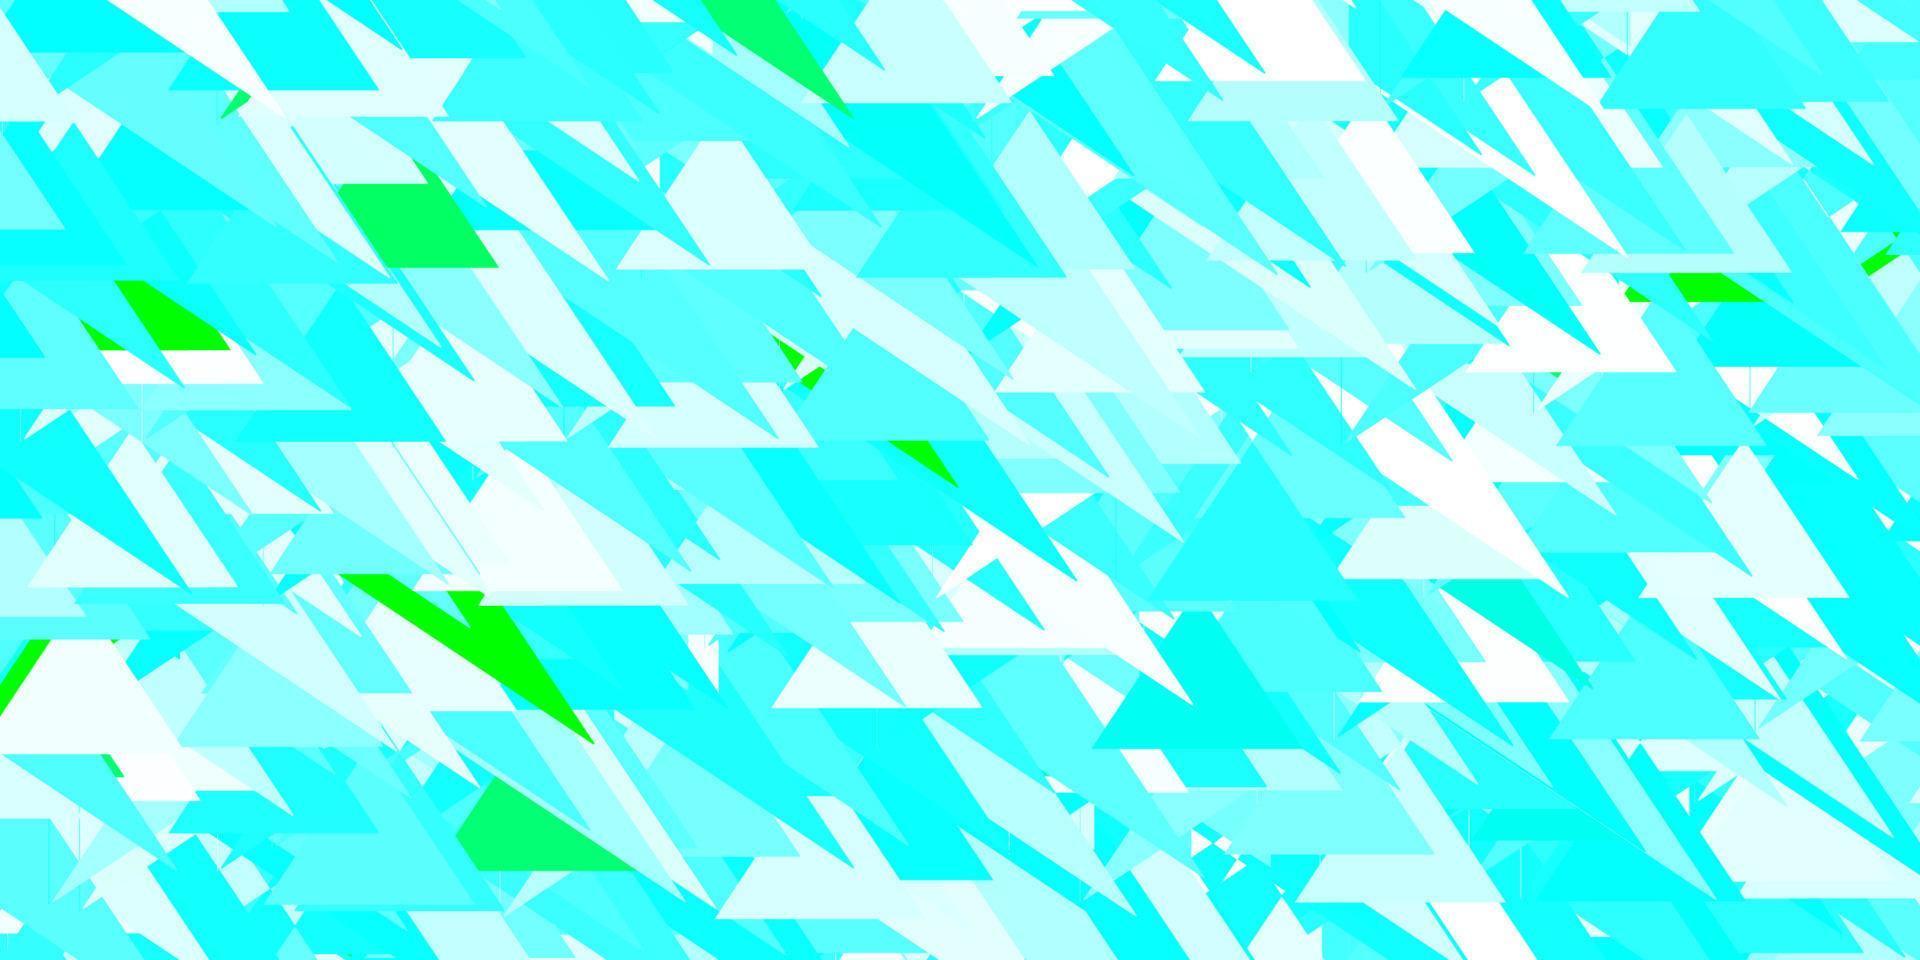 modelo de vetor azul claro e verde com formas de triângulo.